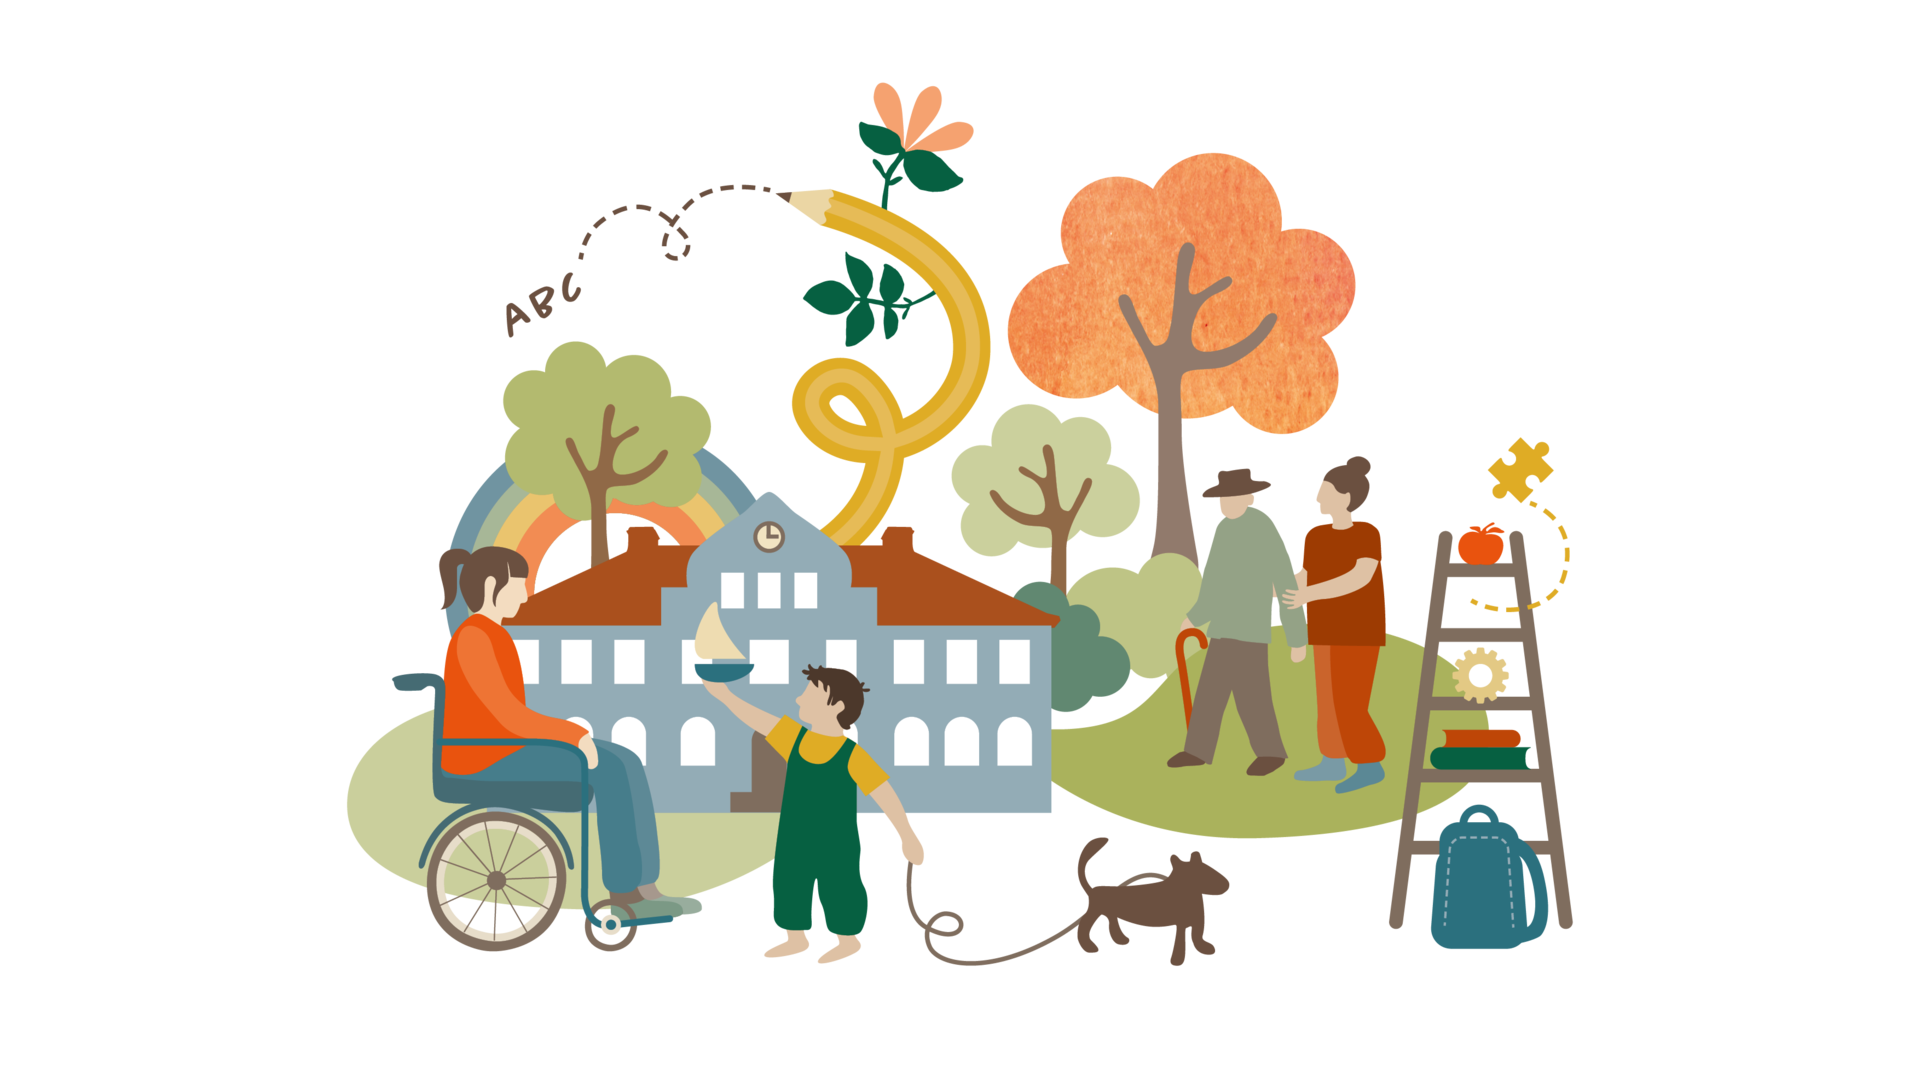 Illustration för utvecklingsområdet "Genom hela livet" med bilder som symboliserar skola, vård och omsorg, socialtjänst och ett härligt liv i Hjo.